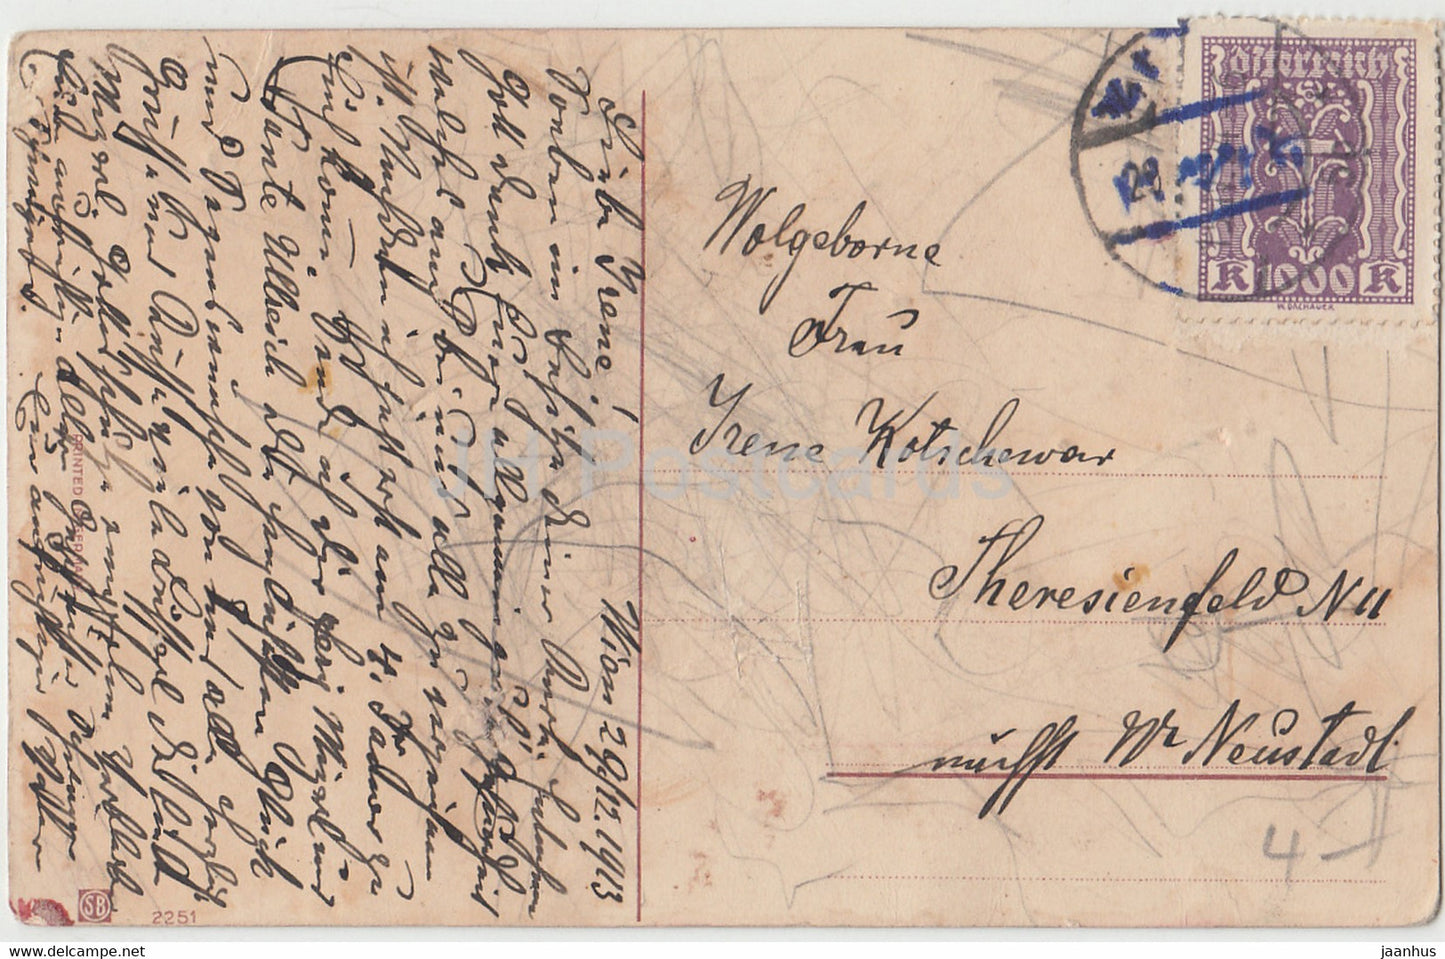 Carte de vœux du Nouvel An - Viel Gluck im Neuen Jahre - maison - facteur - SB 2251 - carte postale ancienne - 1913 - Allemagne - utilisé